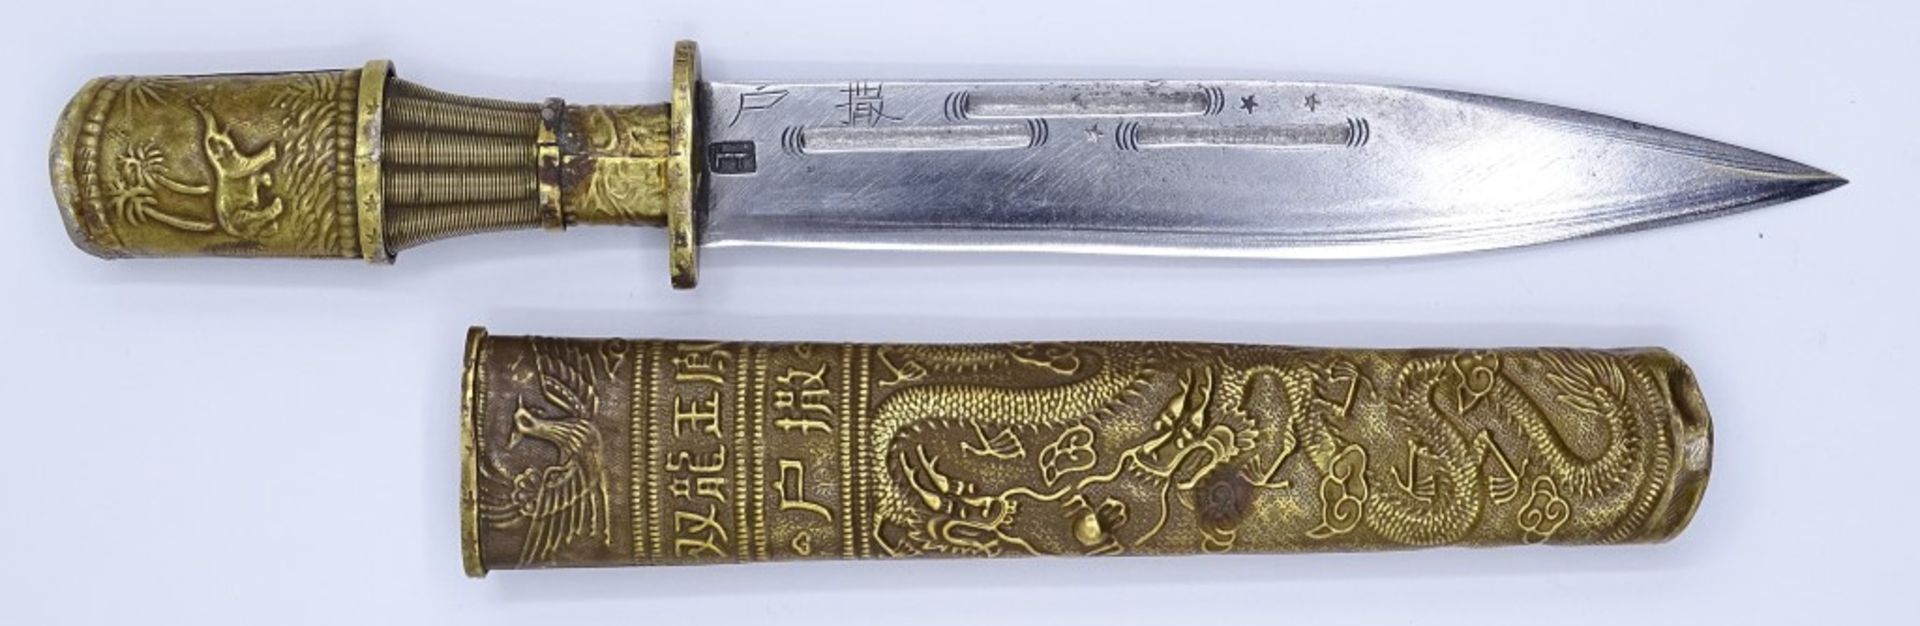 kl.Messer/Dolch ,China, chin.beschriftete Scheide sowie Klinge mit Herstellerpunze?,Drachen - Bild 3 aus 10